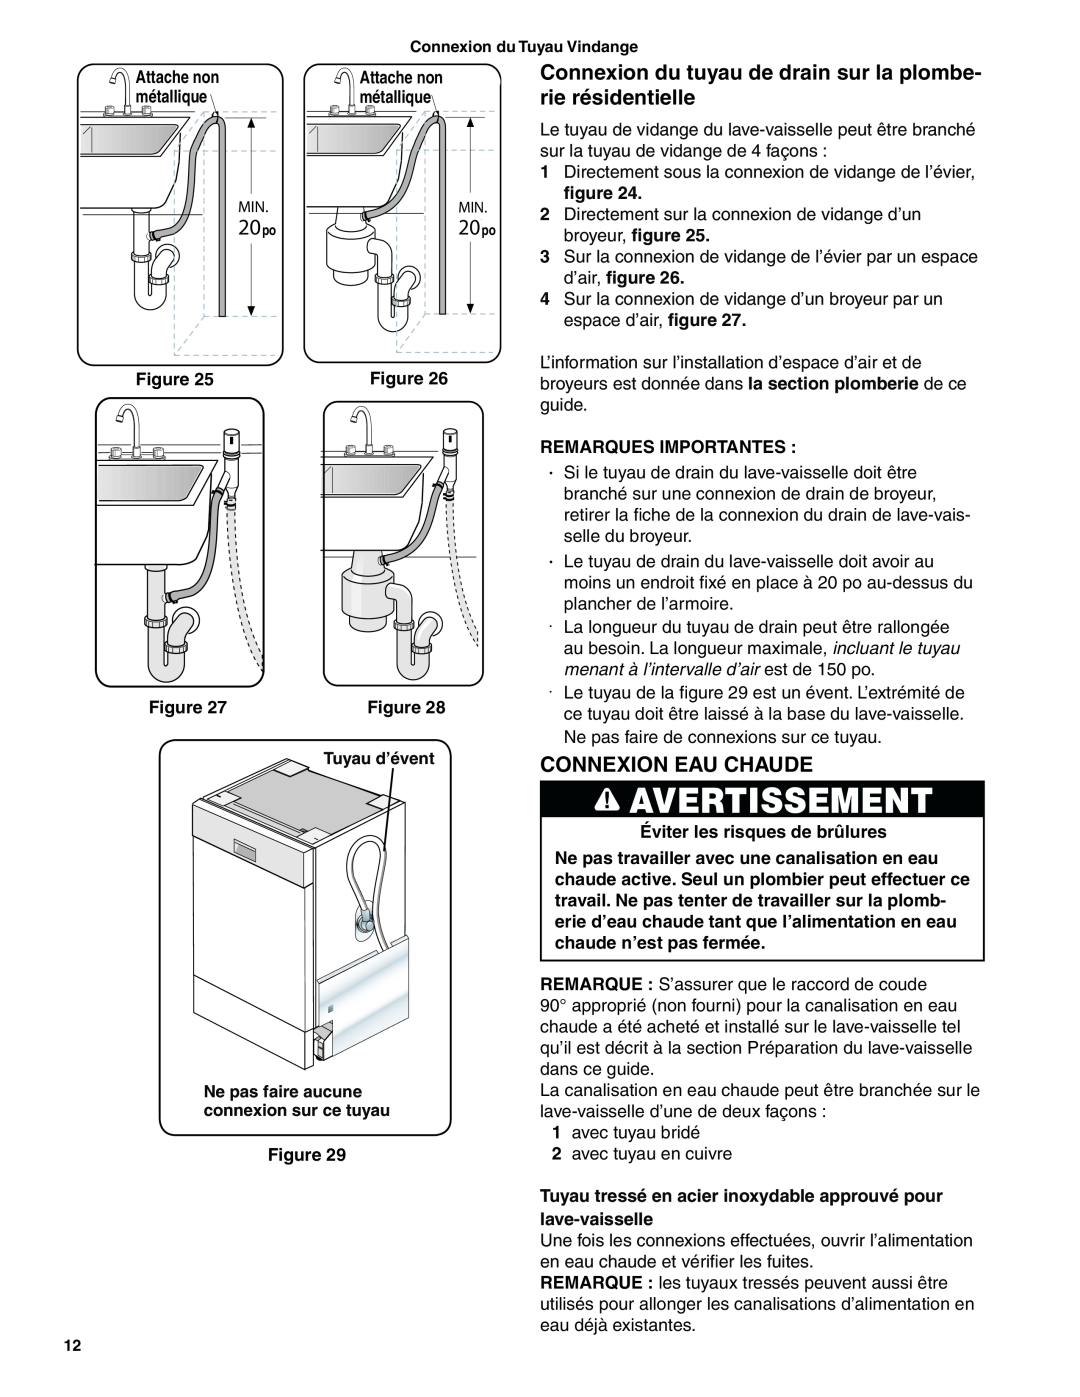 Bosch Appliances BSH Dishwasher important safety instructions 20po, Connexion Eau Chaude, Non-MetallicTie, Avertissement 